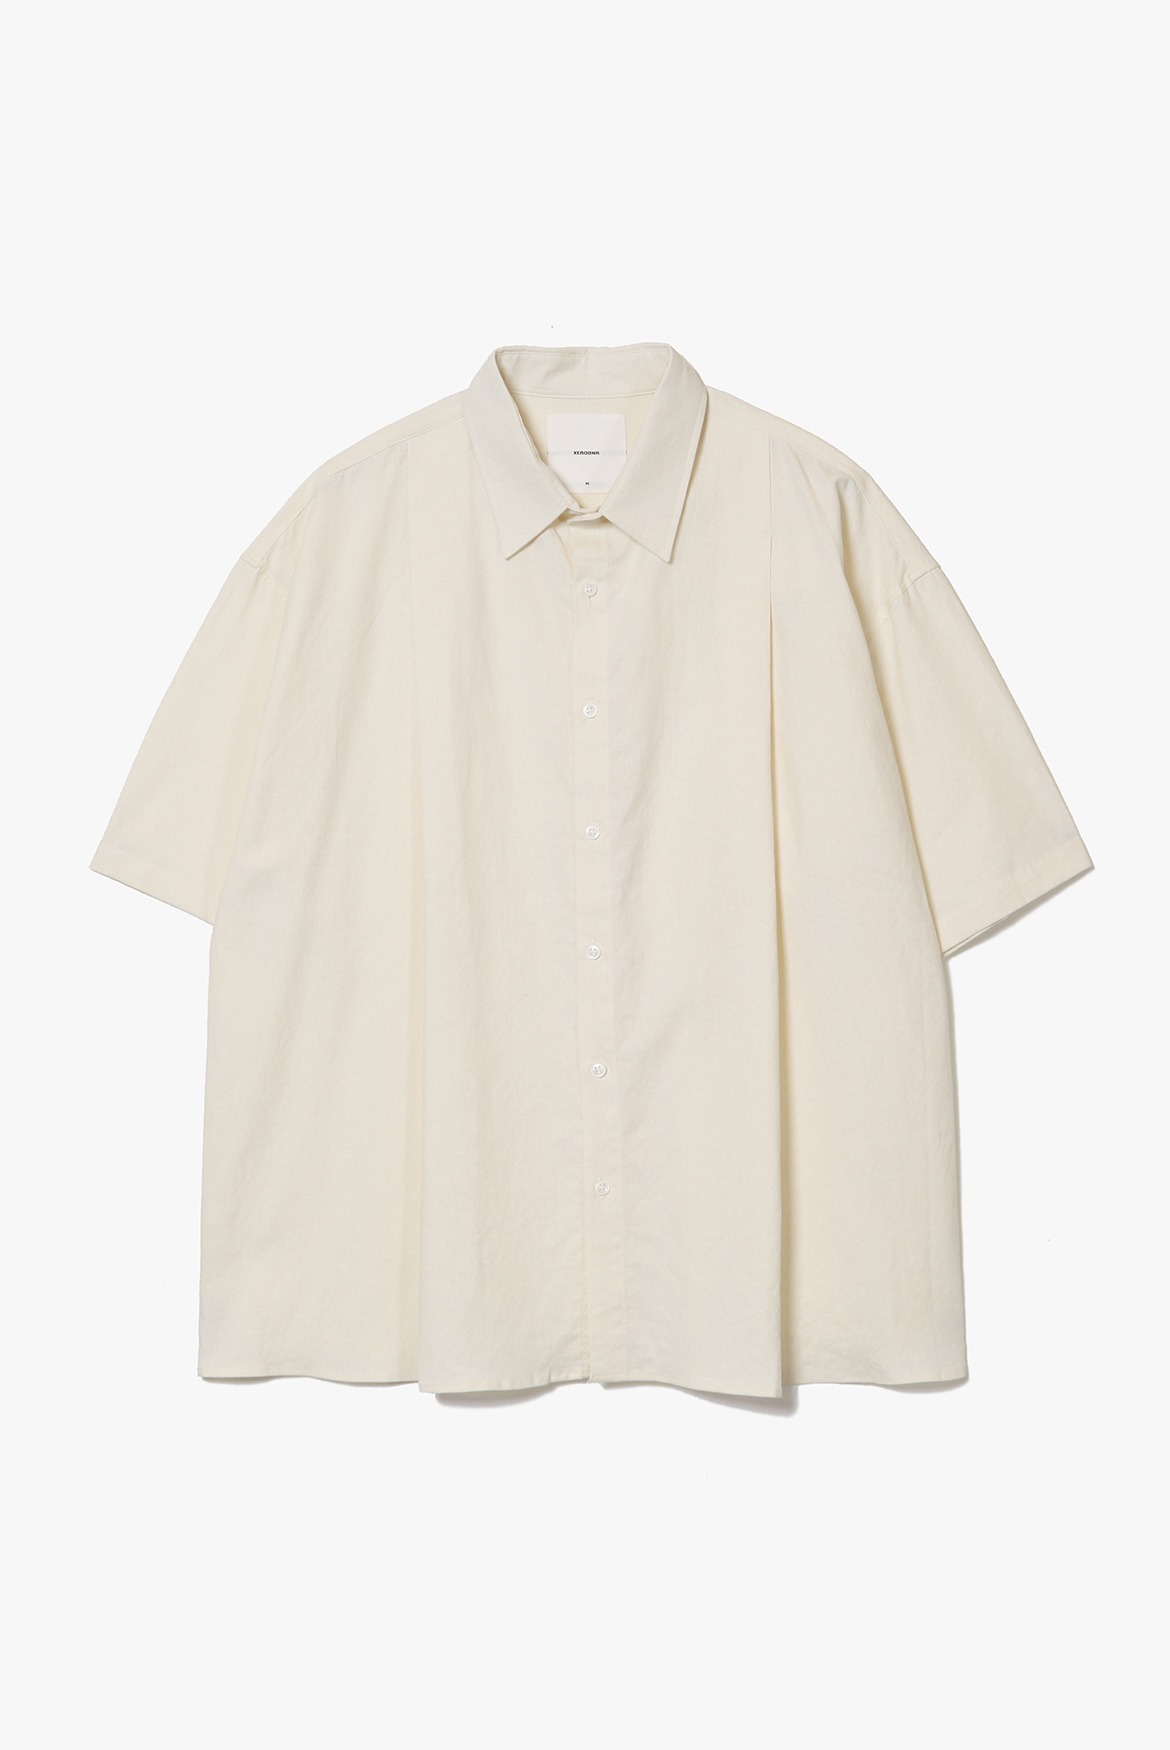 Deep Tuck Linen Shirts [Cream]